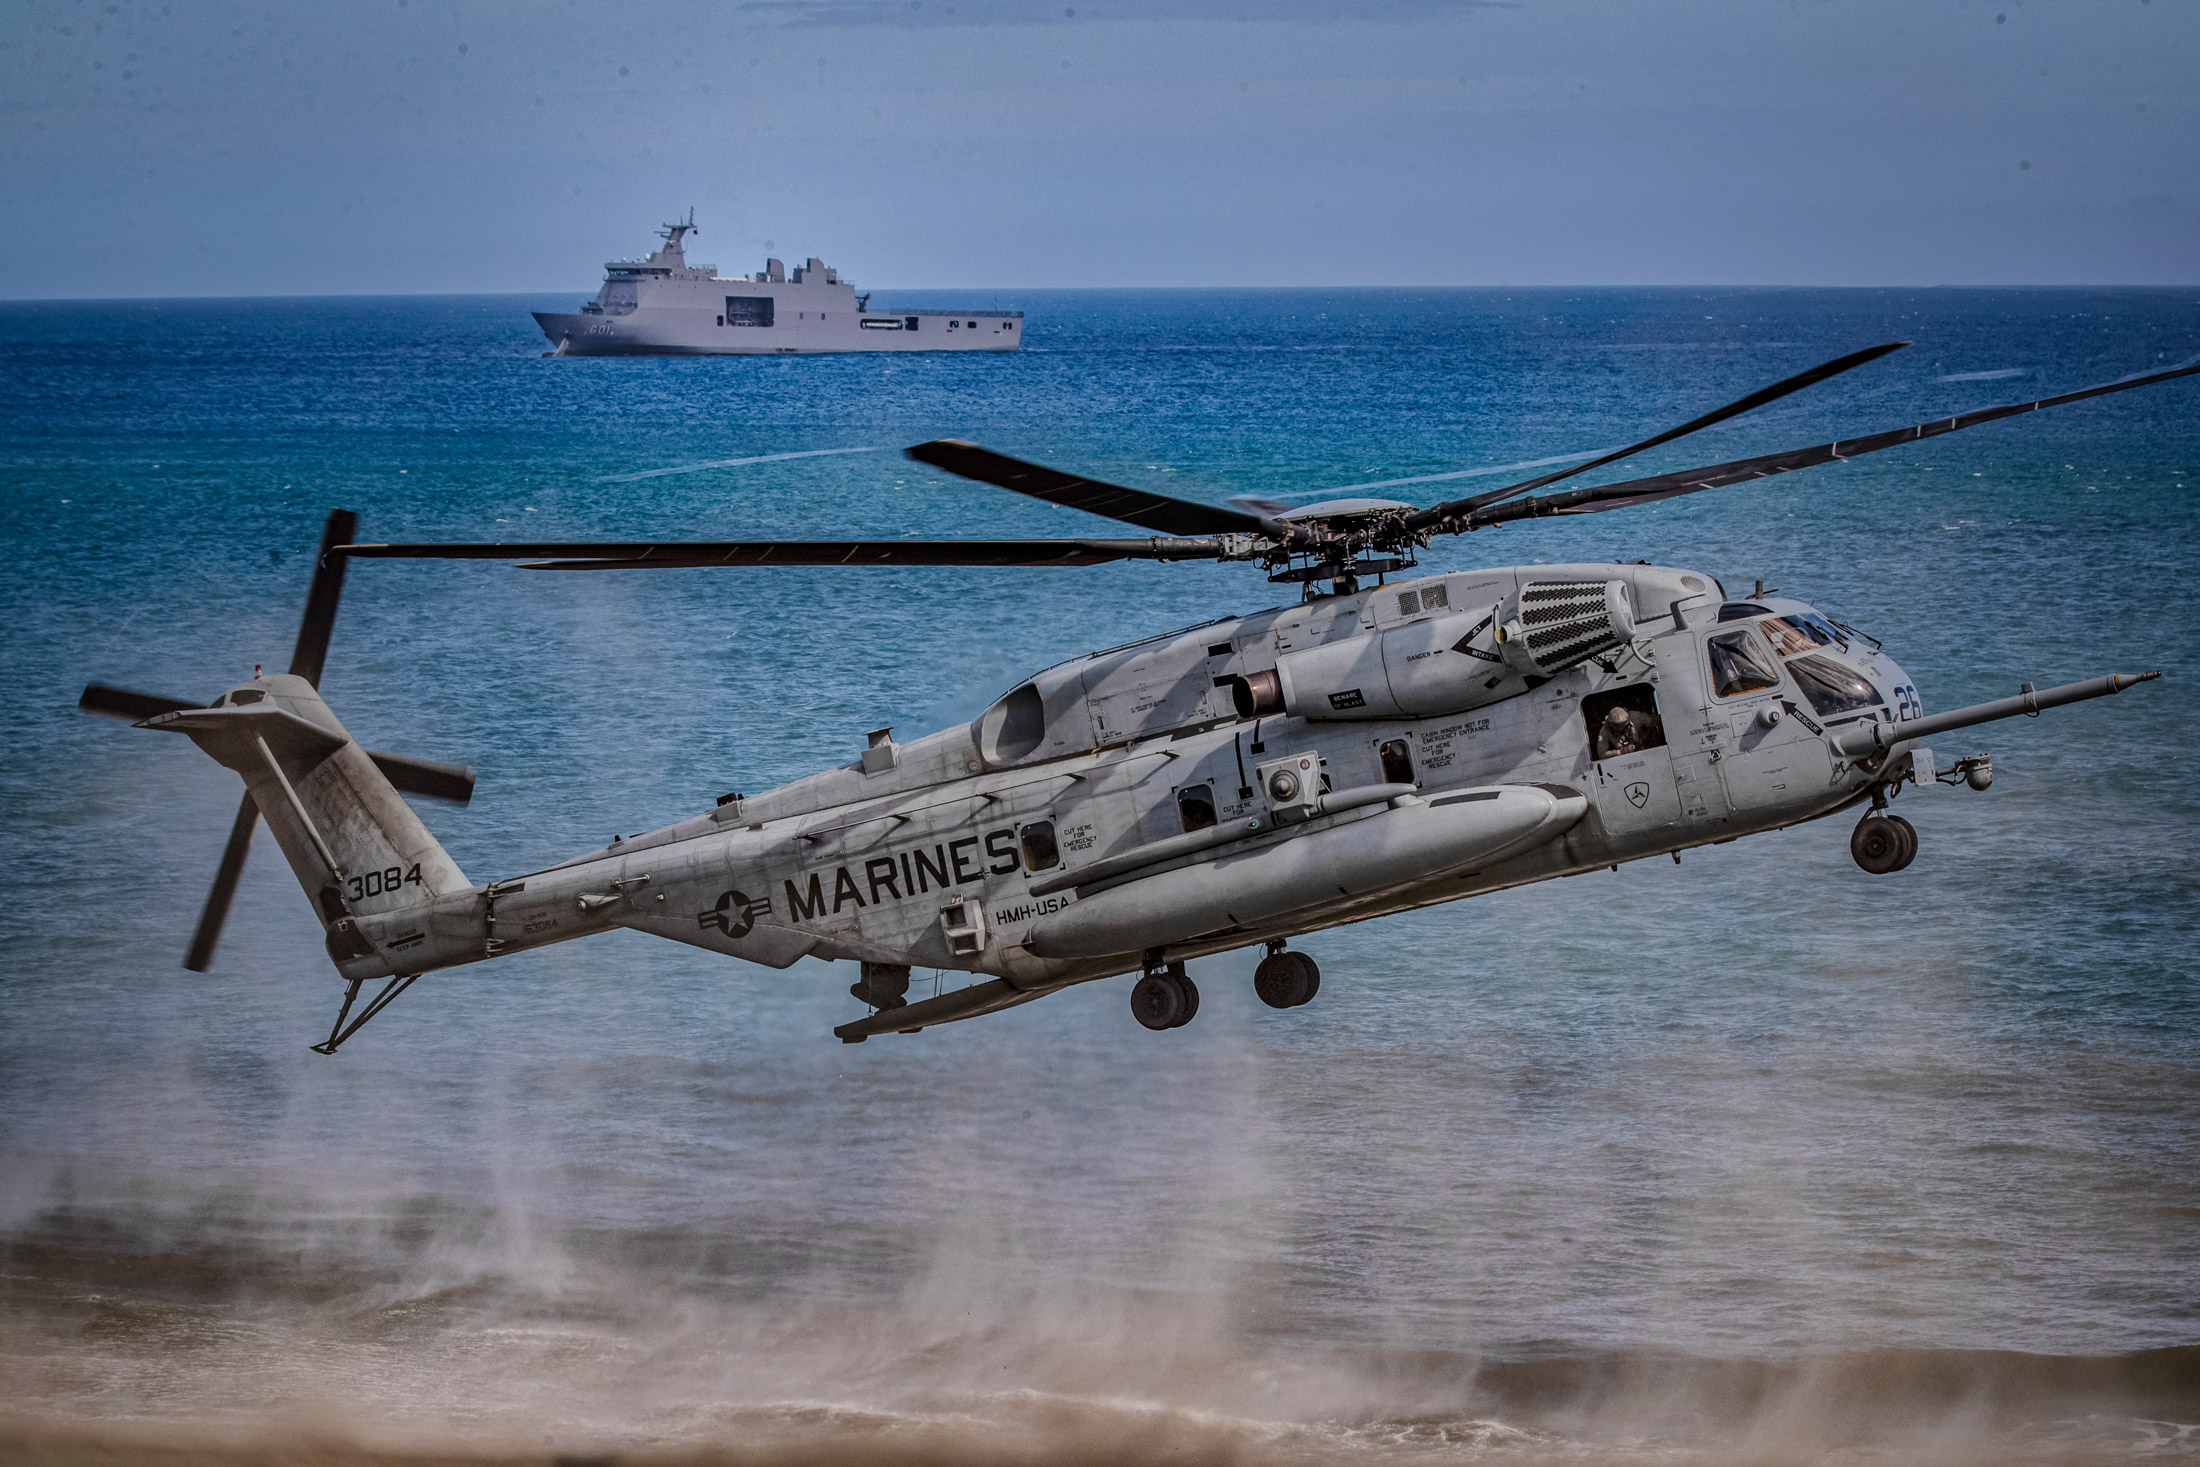 Một chiếc trực thăng CH53 của Thủy quân lục chiến Hoa Kỳ cất cánh trong một cuộc tập trận chung Hoa Kỳ-Philippines ngoài khơi Biển Đông ở Claveria, tỉnh Cagayan, Philippines, vào ngày 31/03/2022. (Ảnh: Ezra Acayan/Getty Images)